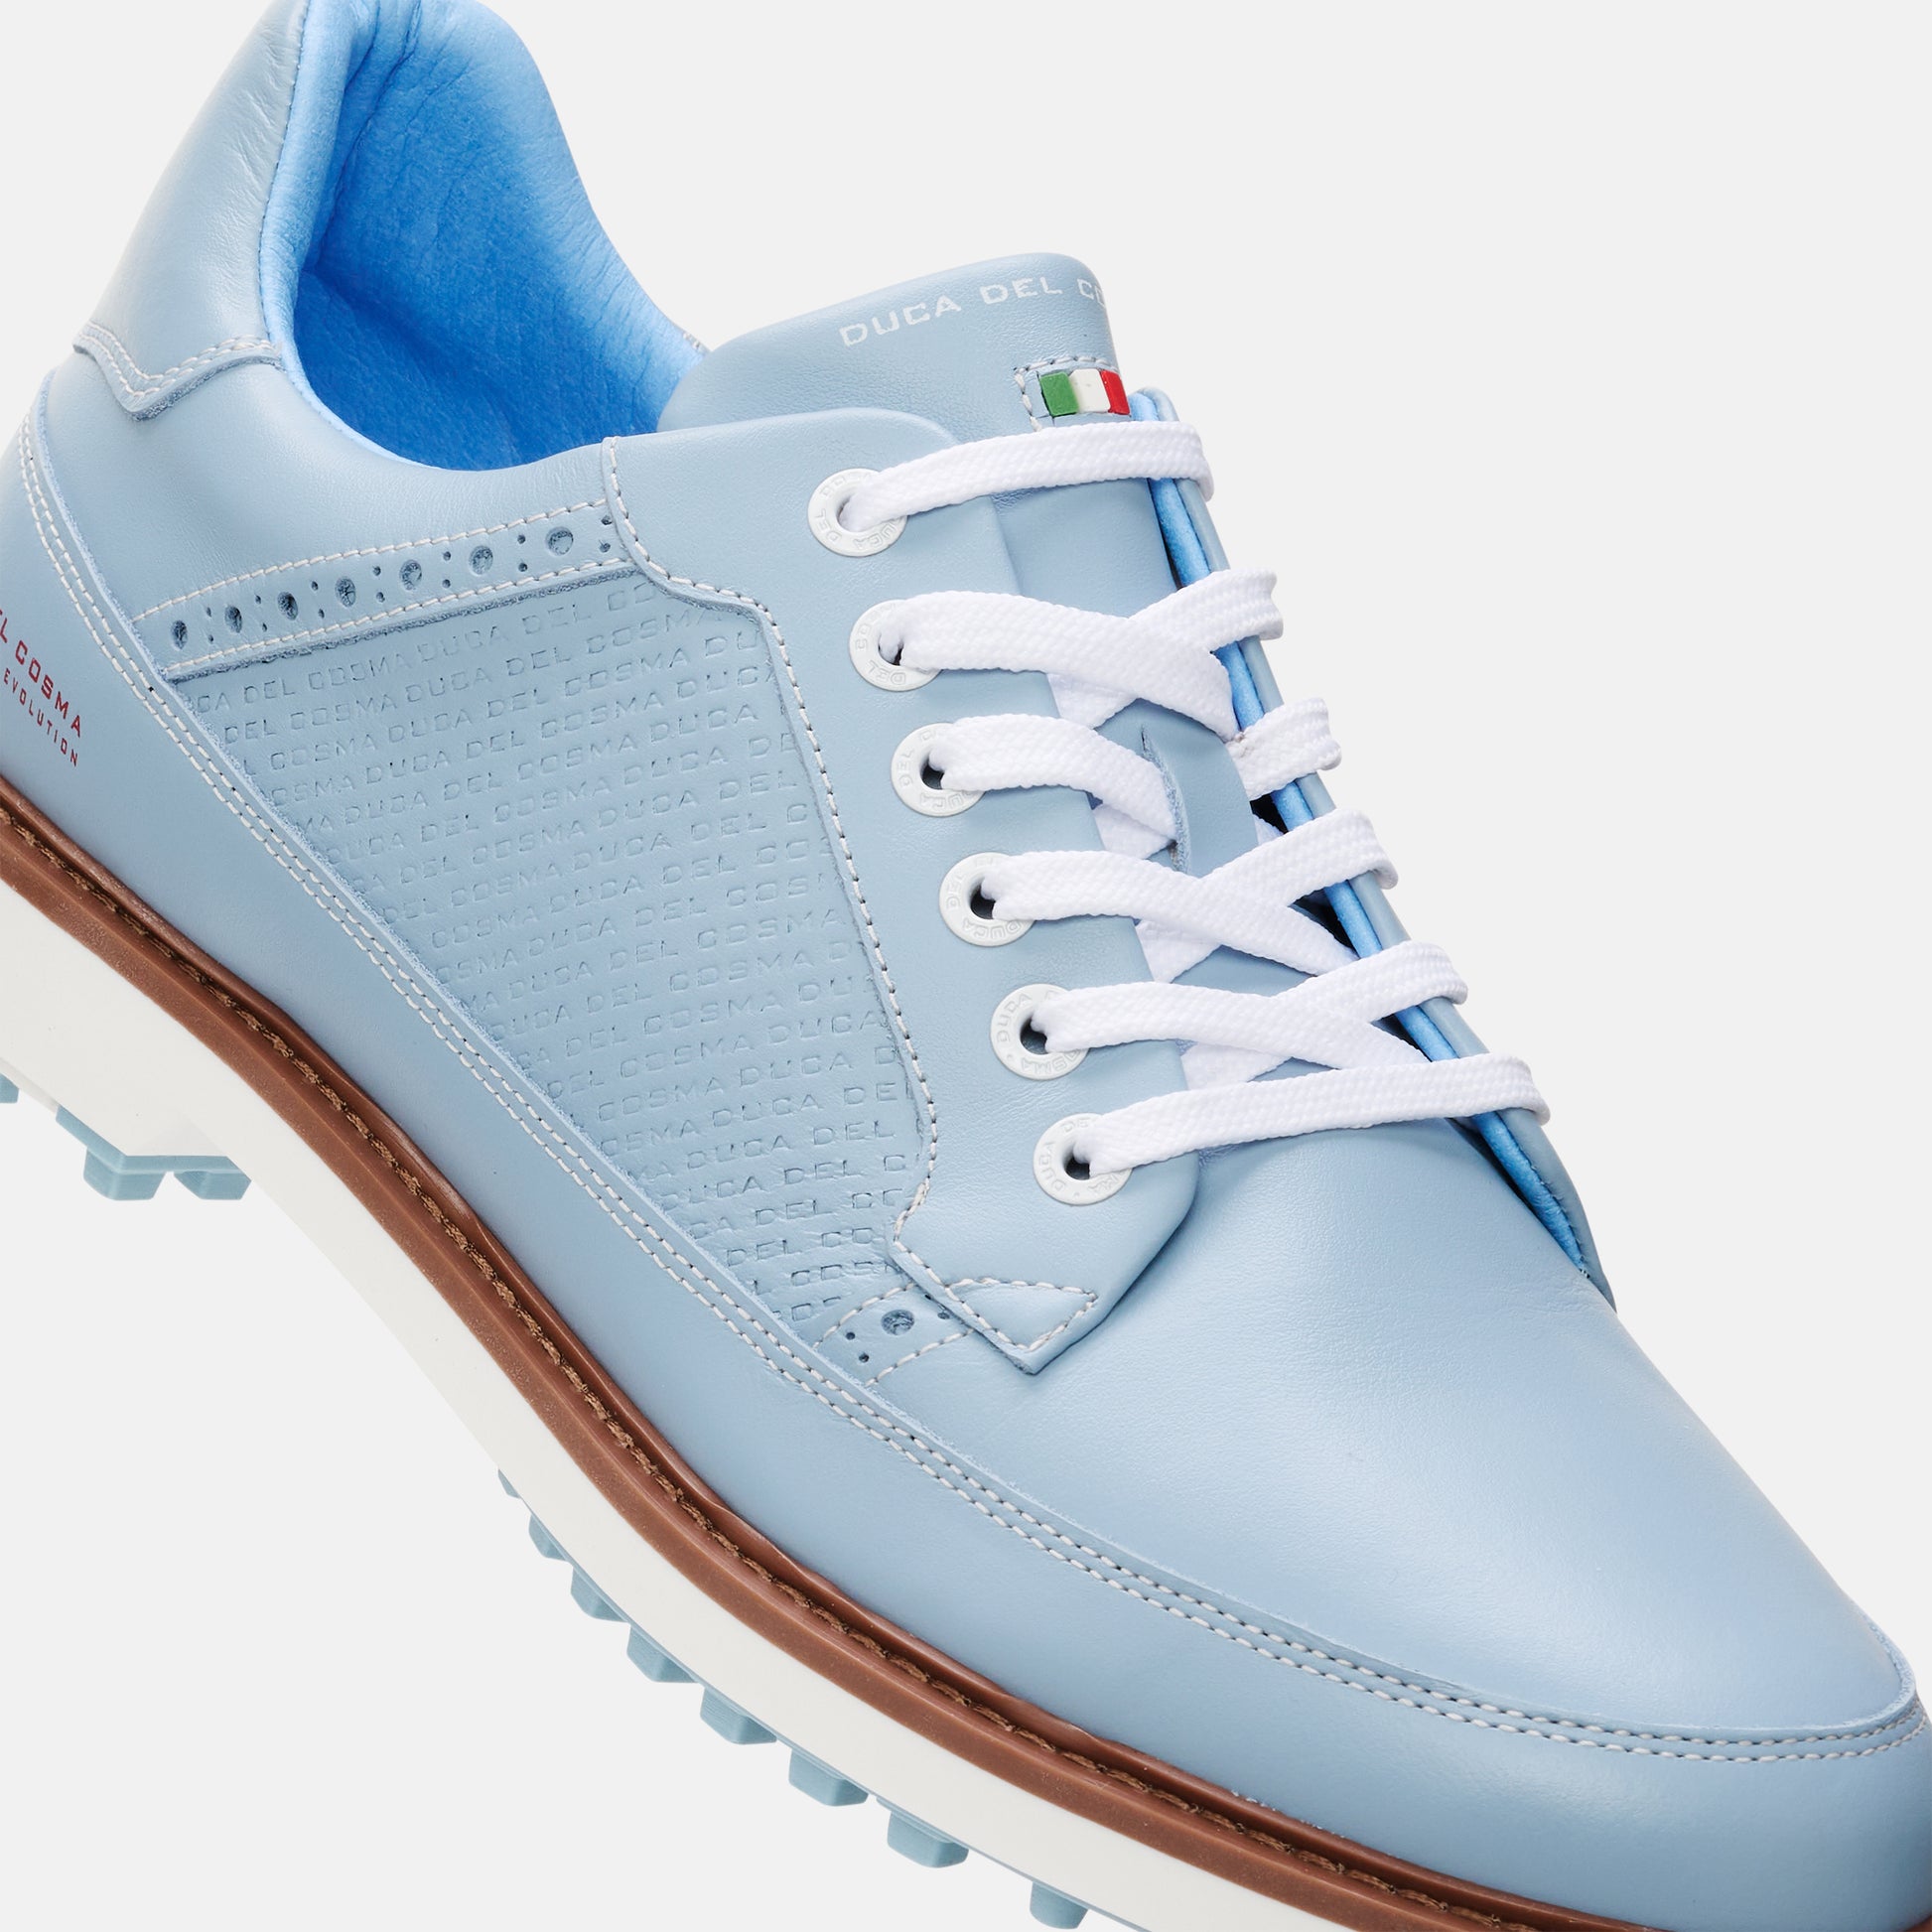 Lightweight Golf Shoes, Light Blue Golf Shoes, Blue Golf Shoes, Waterproof Golf Shoes, Spikeless Golf Shoes, Duca del Cosma Men's Golf Shoes, Classic golf shoes.